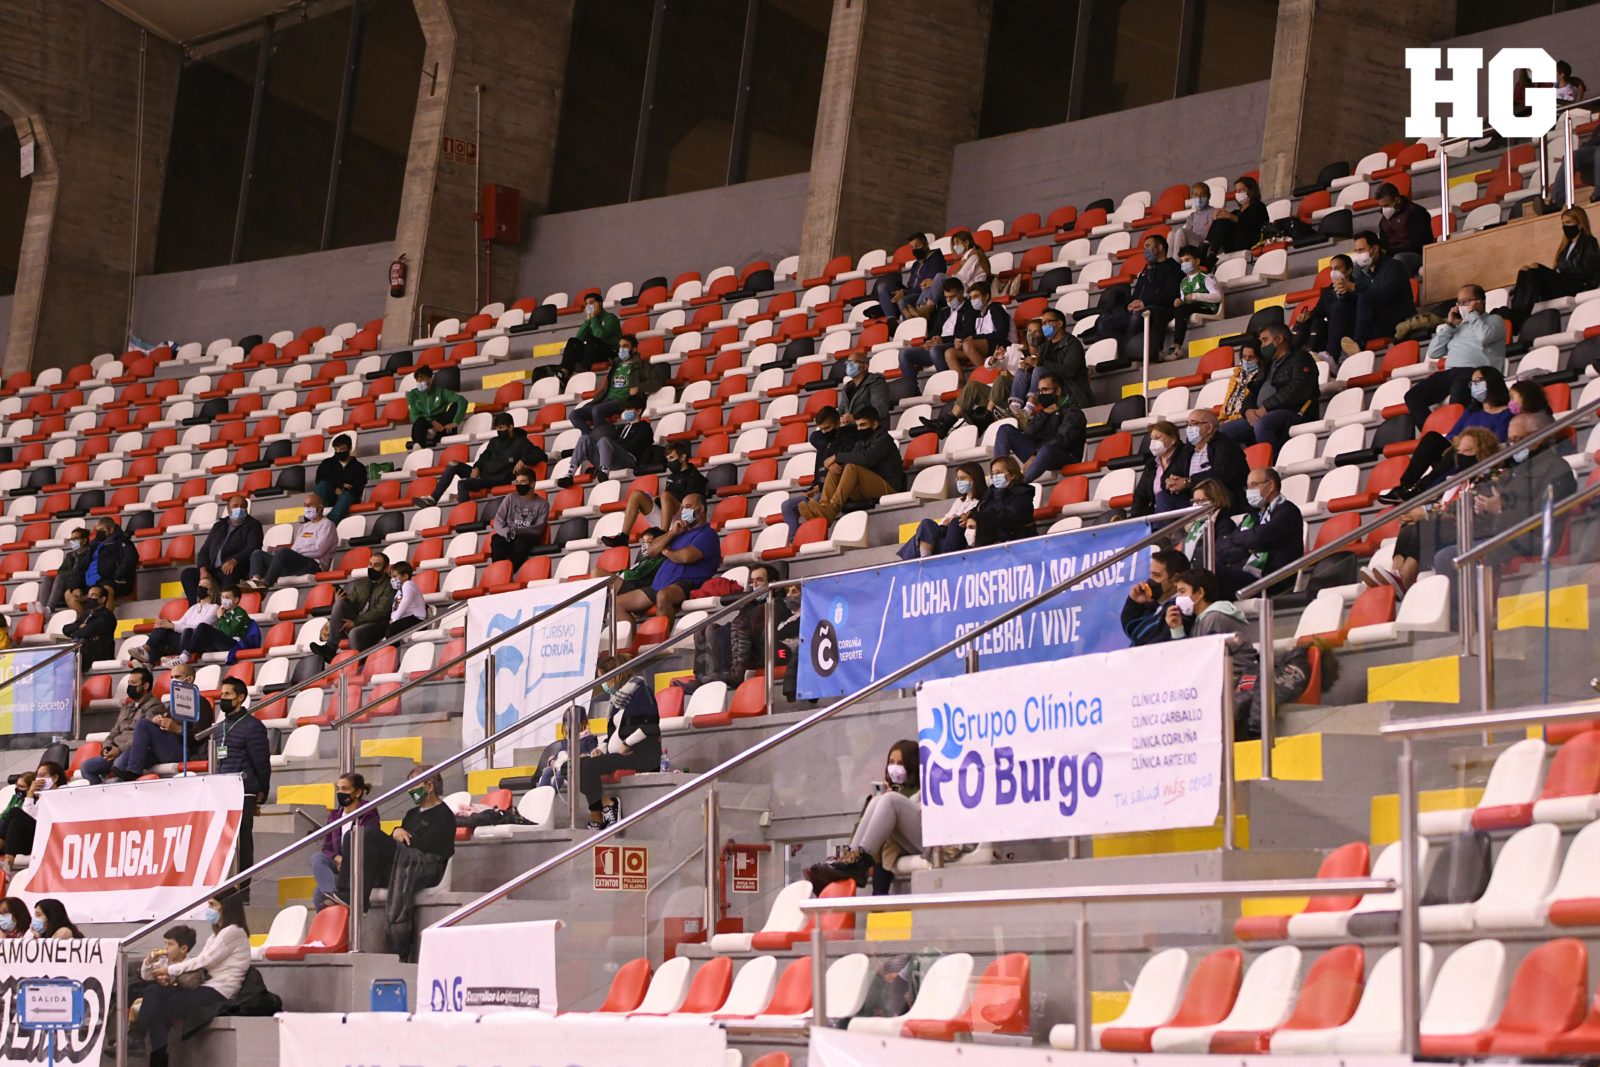 Aforo máximo de 300 persoas no partido ante o CH Mataró